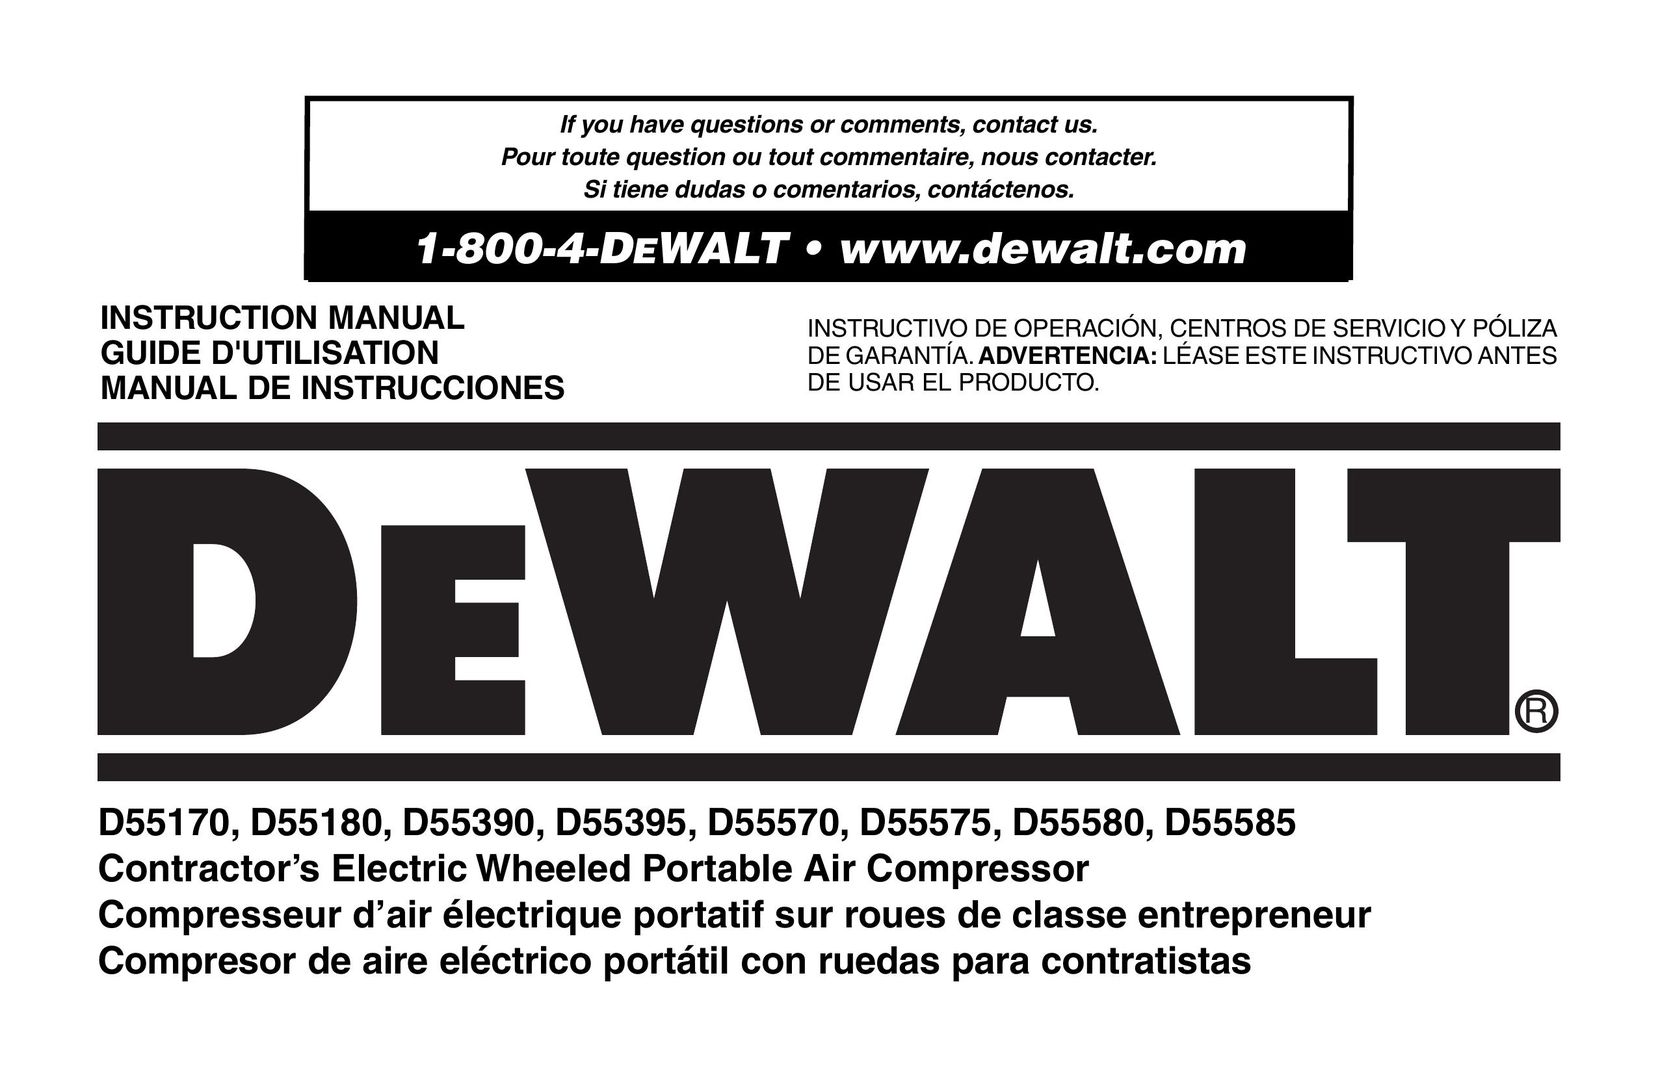 DeWalt D55180 Air Compressor User Manual